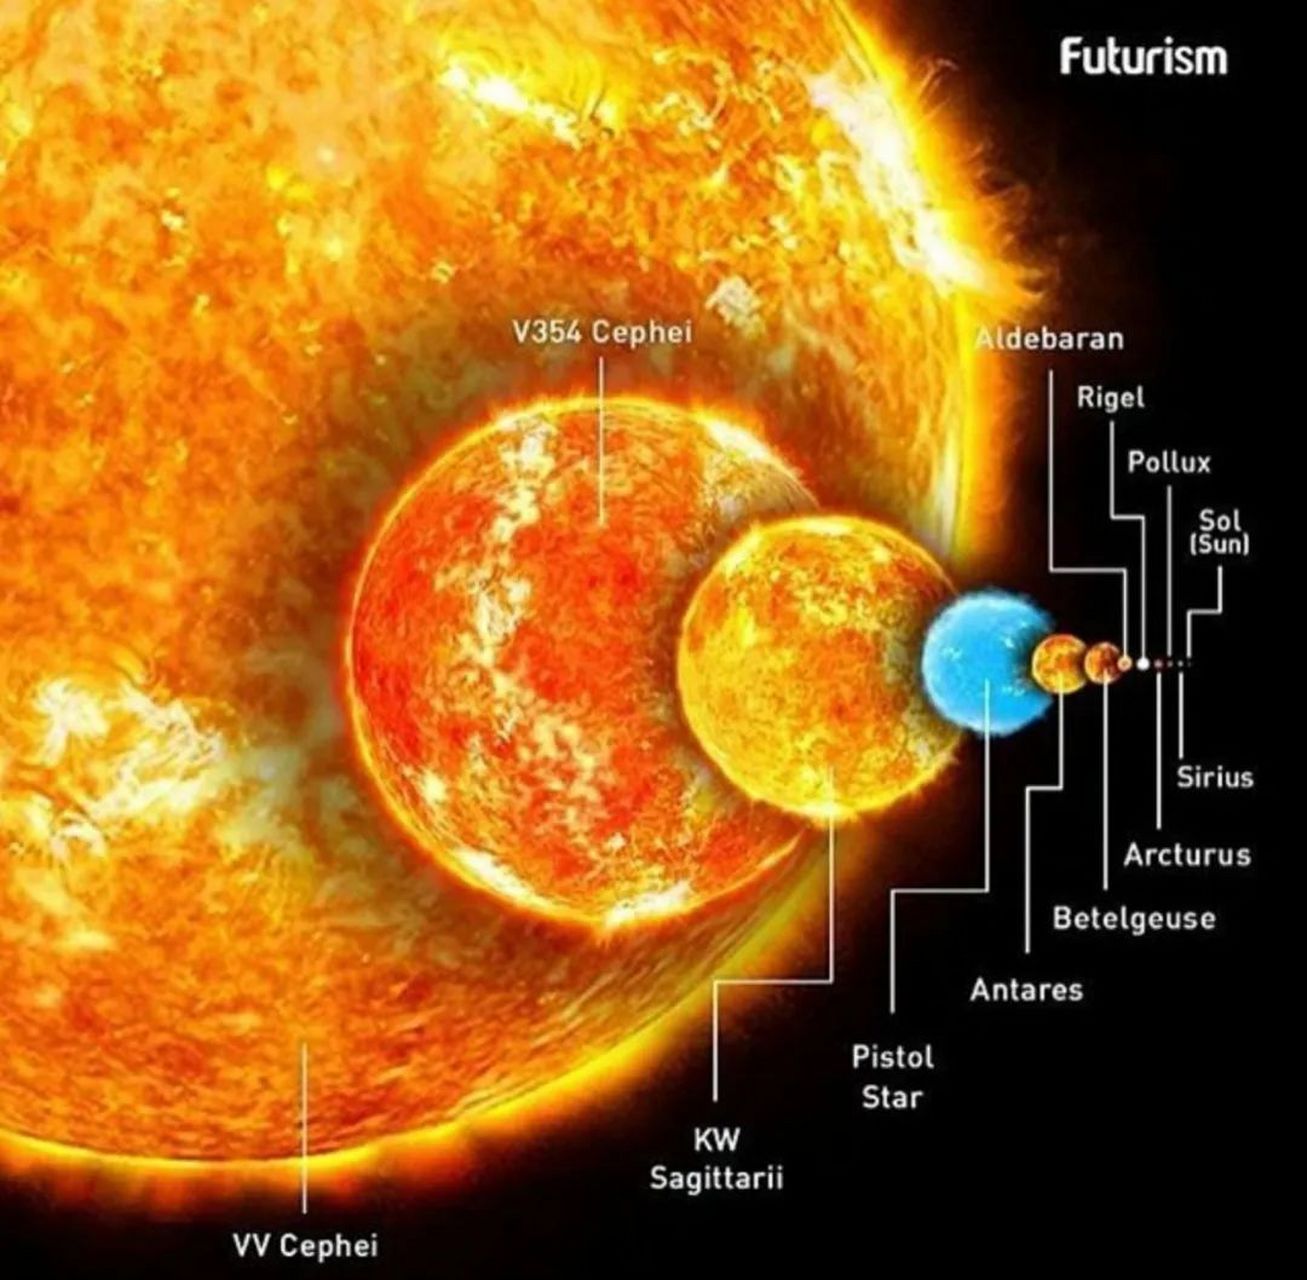 来看宇宙里的恒星大小,其中最小那个只有一个像素的是太阳   